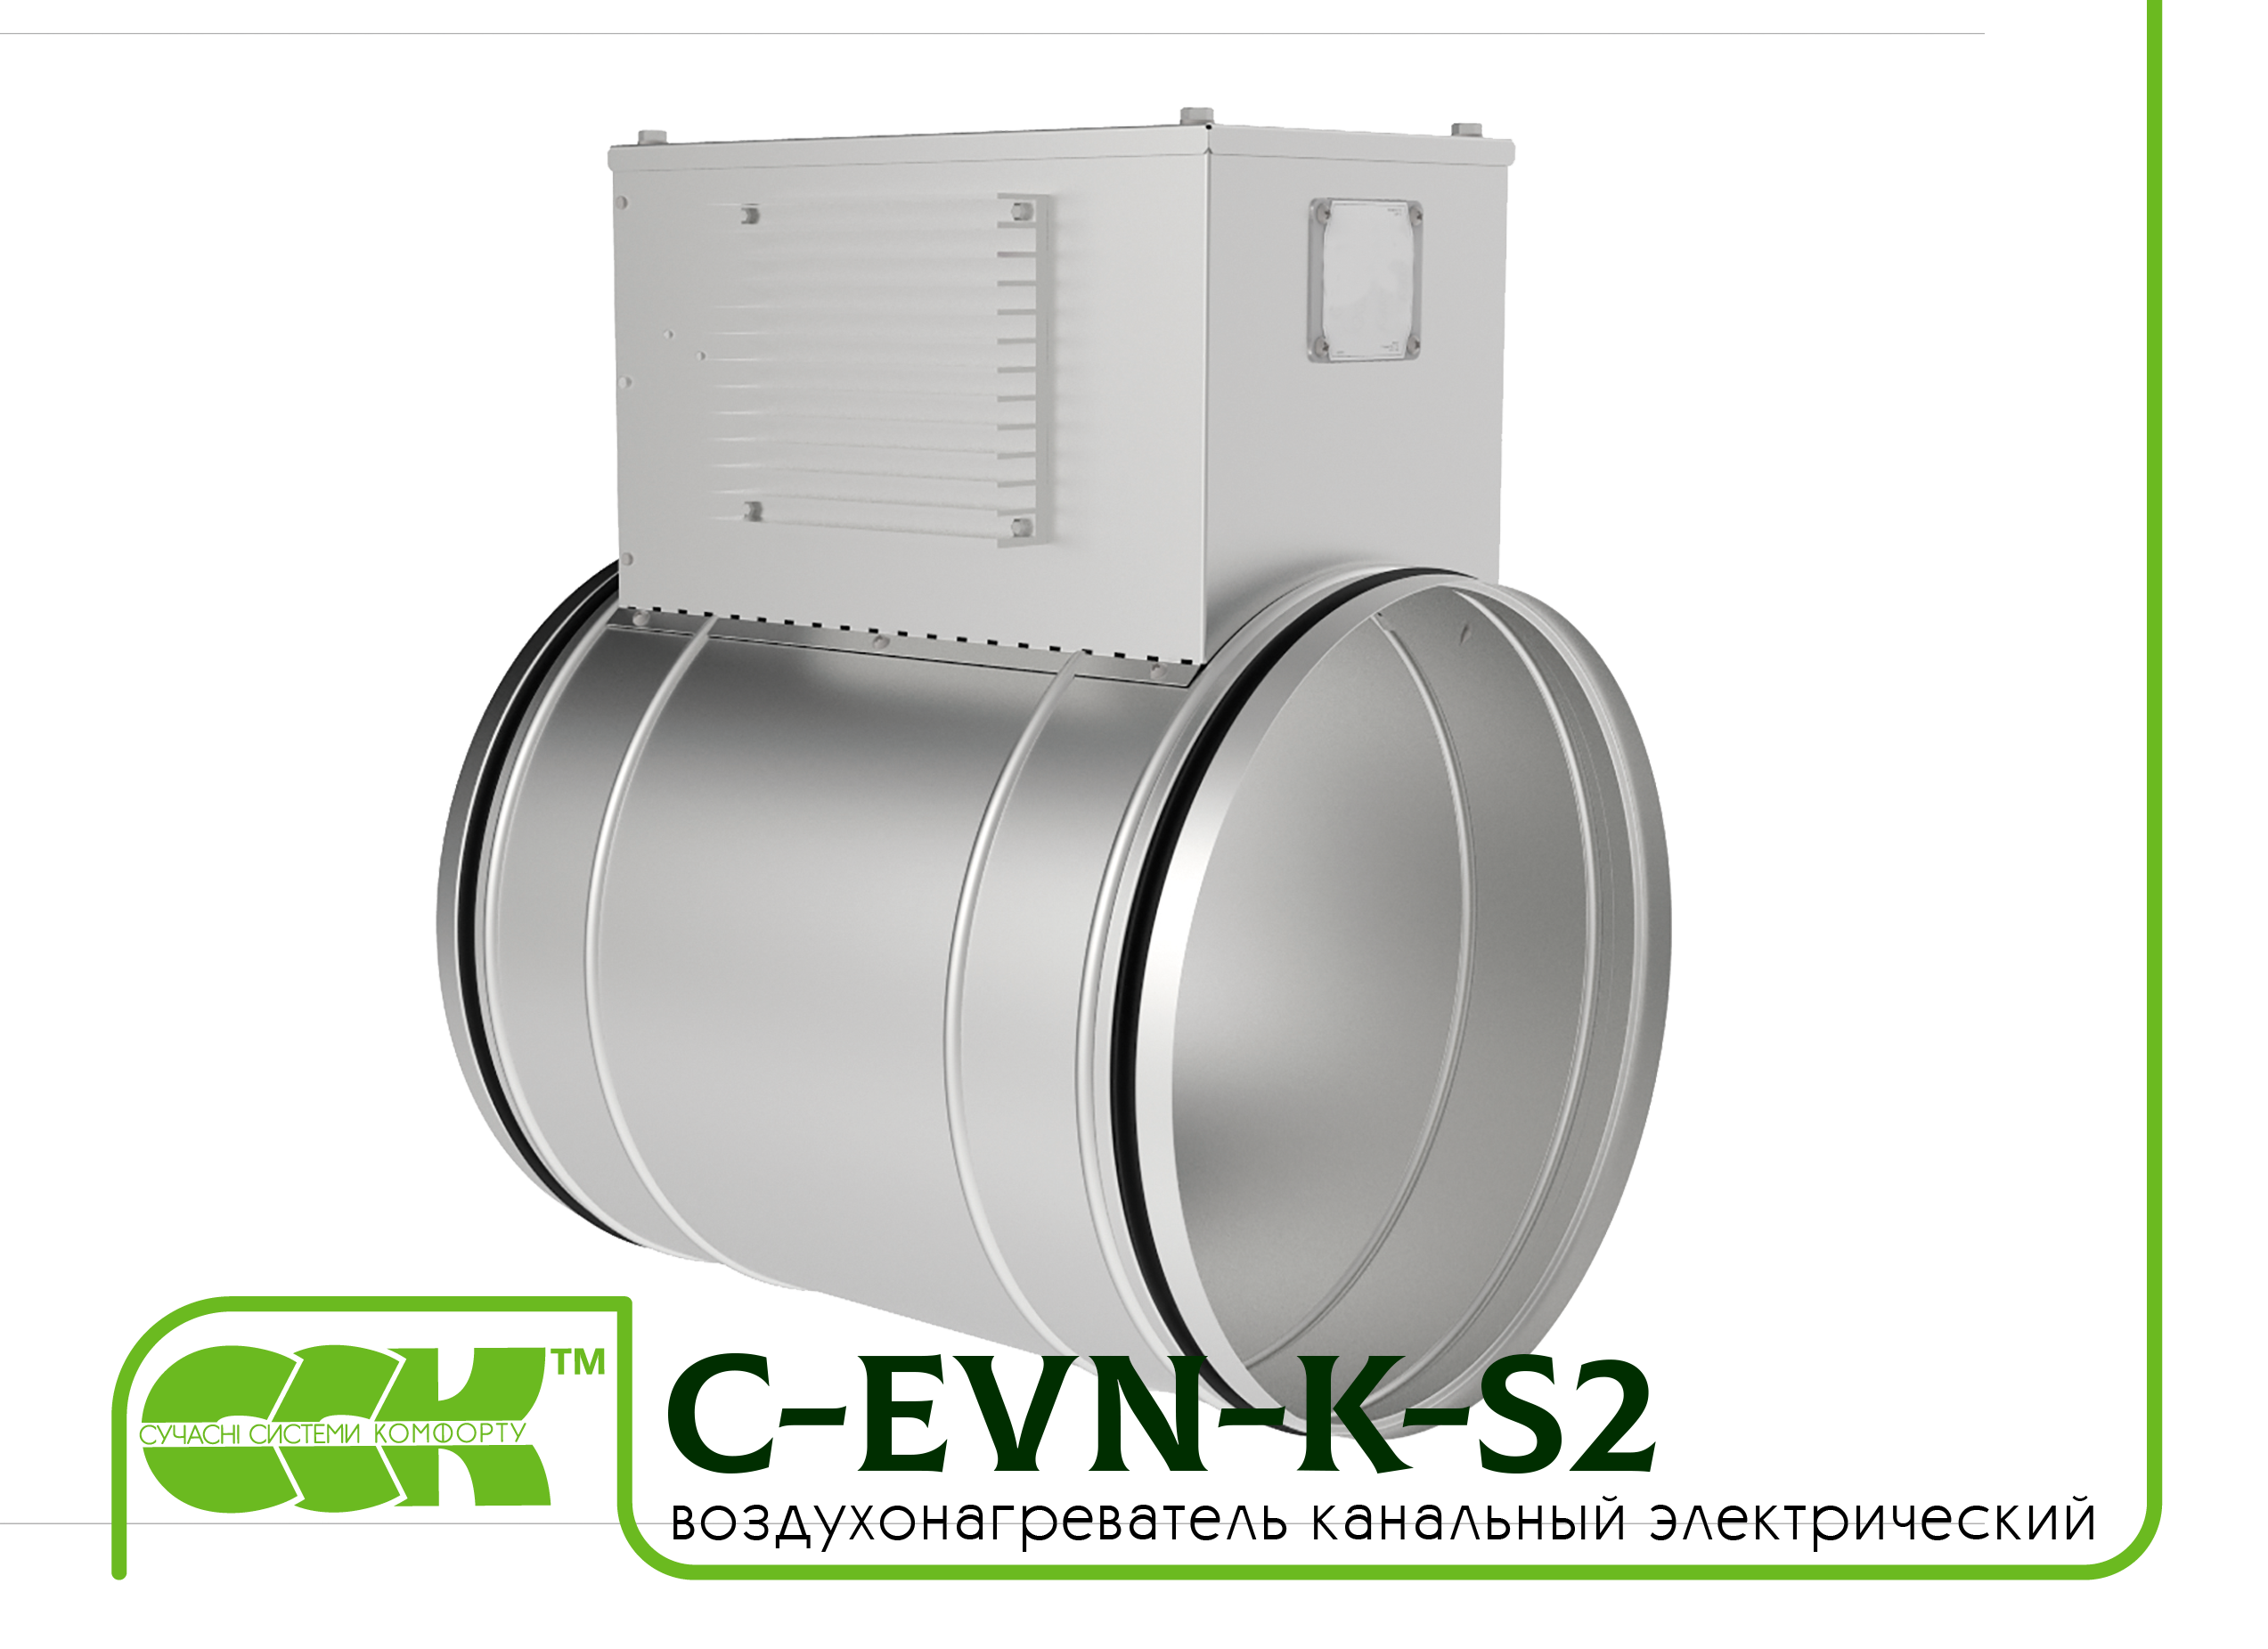 Воздухонагреватель канальный электрический для круглых каналов C-EVN-K-S2-250-6,0